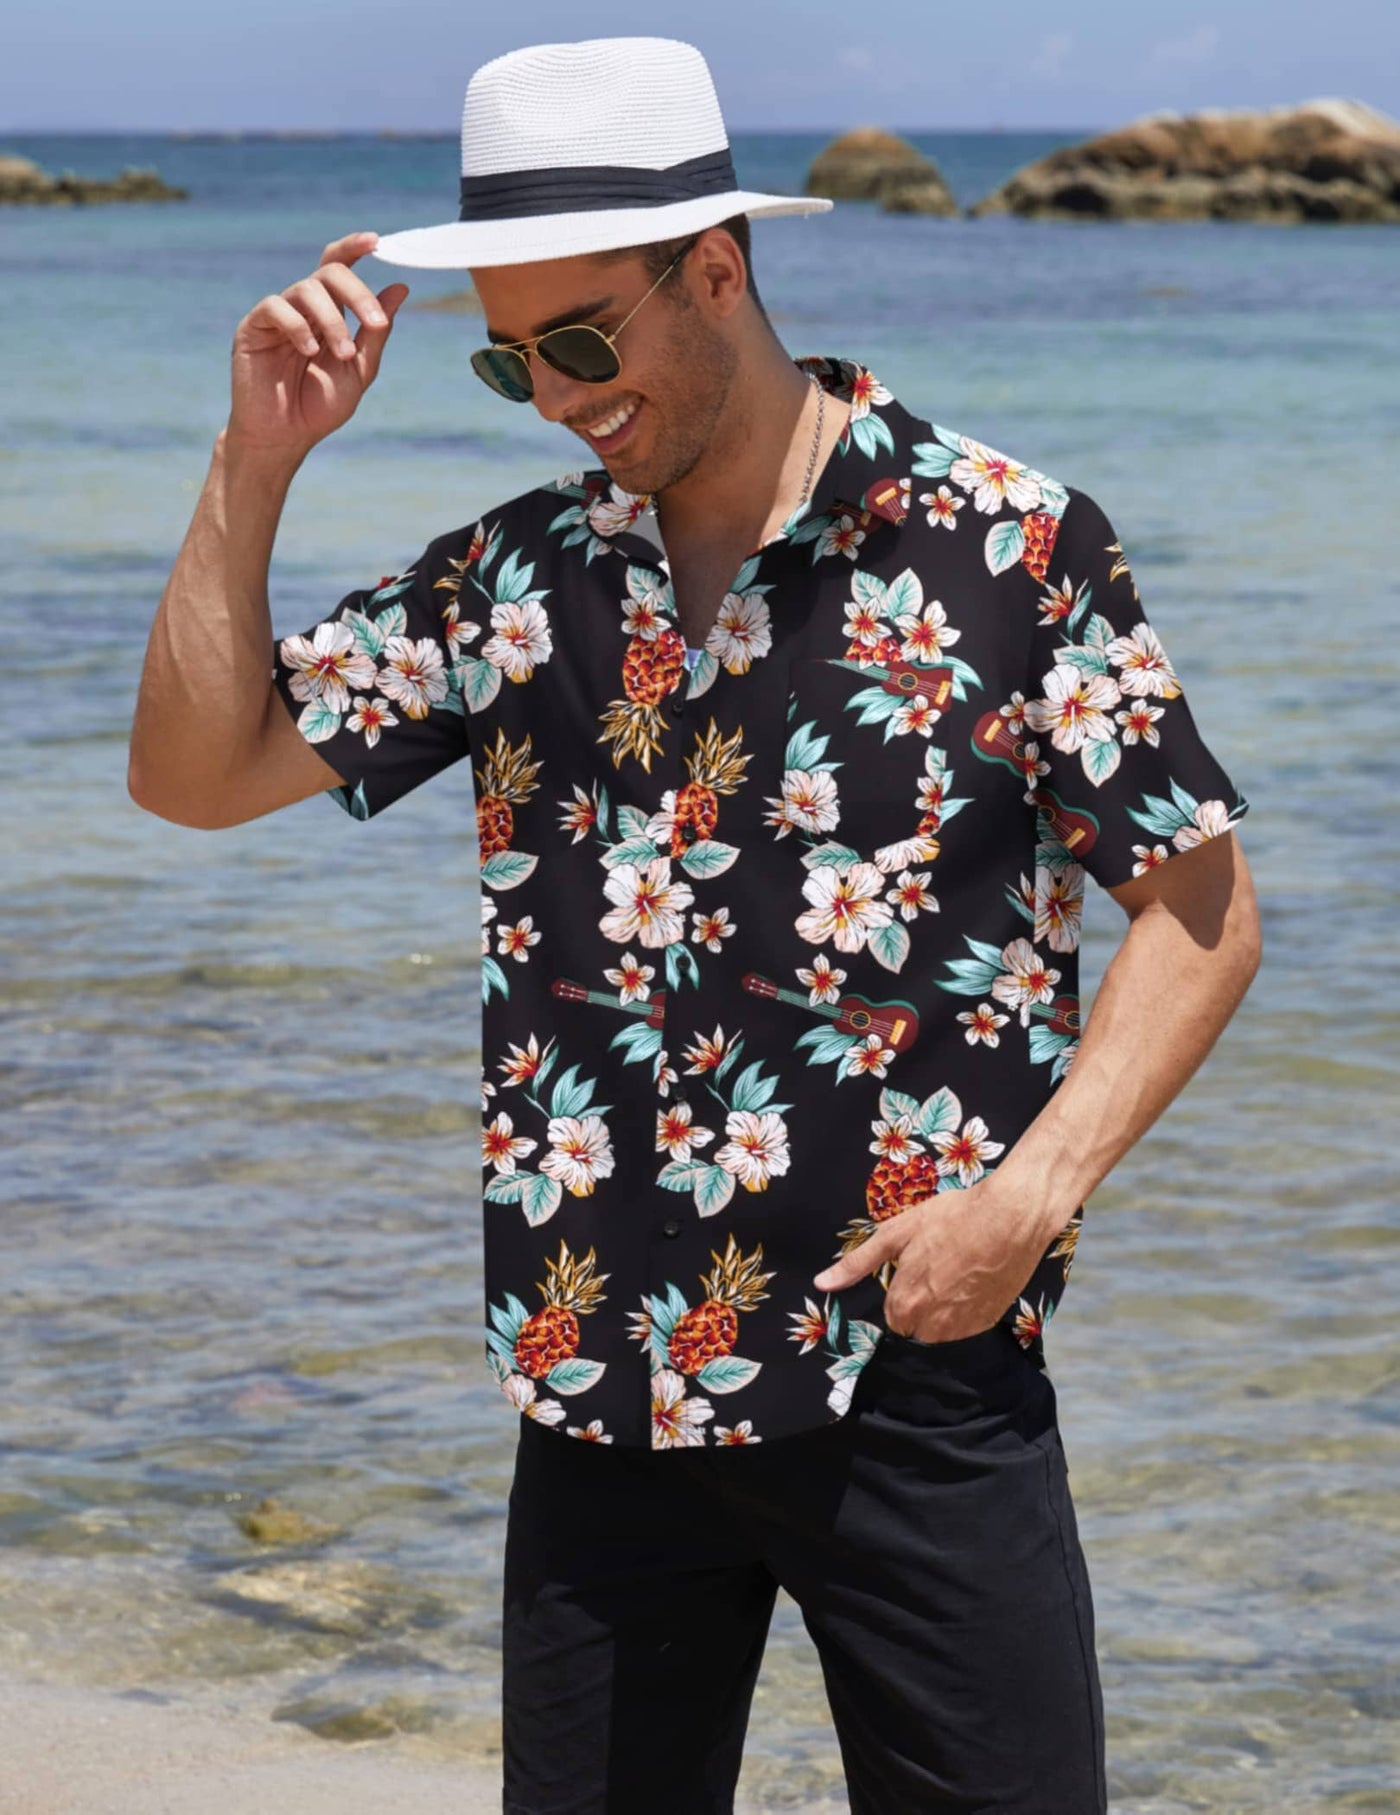 Coofandy Hawaiian Aloha Shirt (US Only) Shirts coofandy 